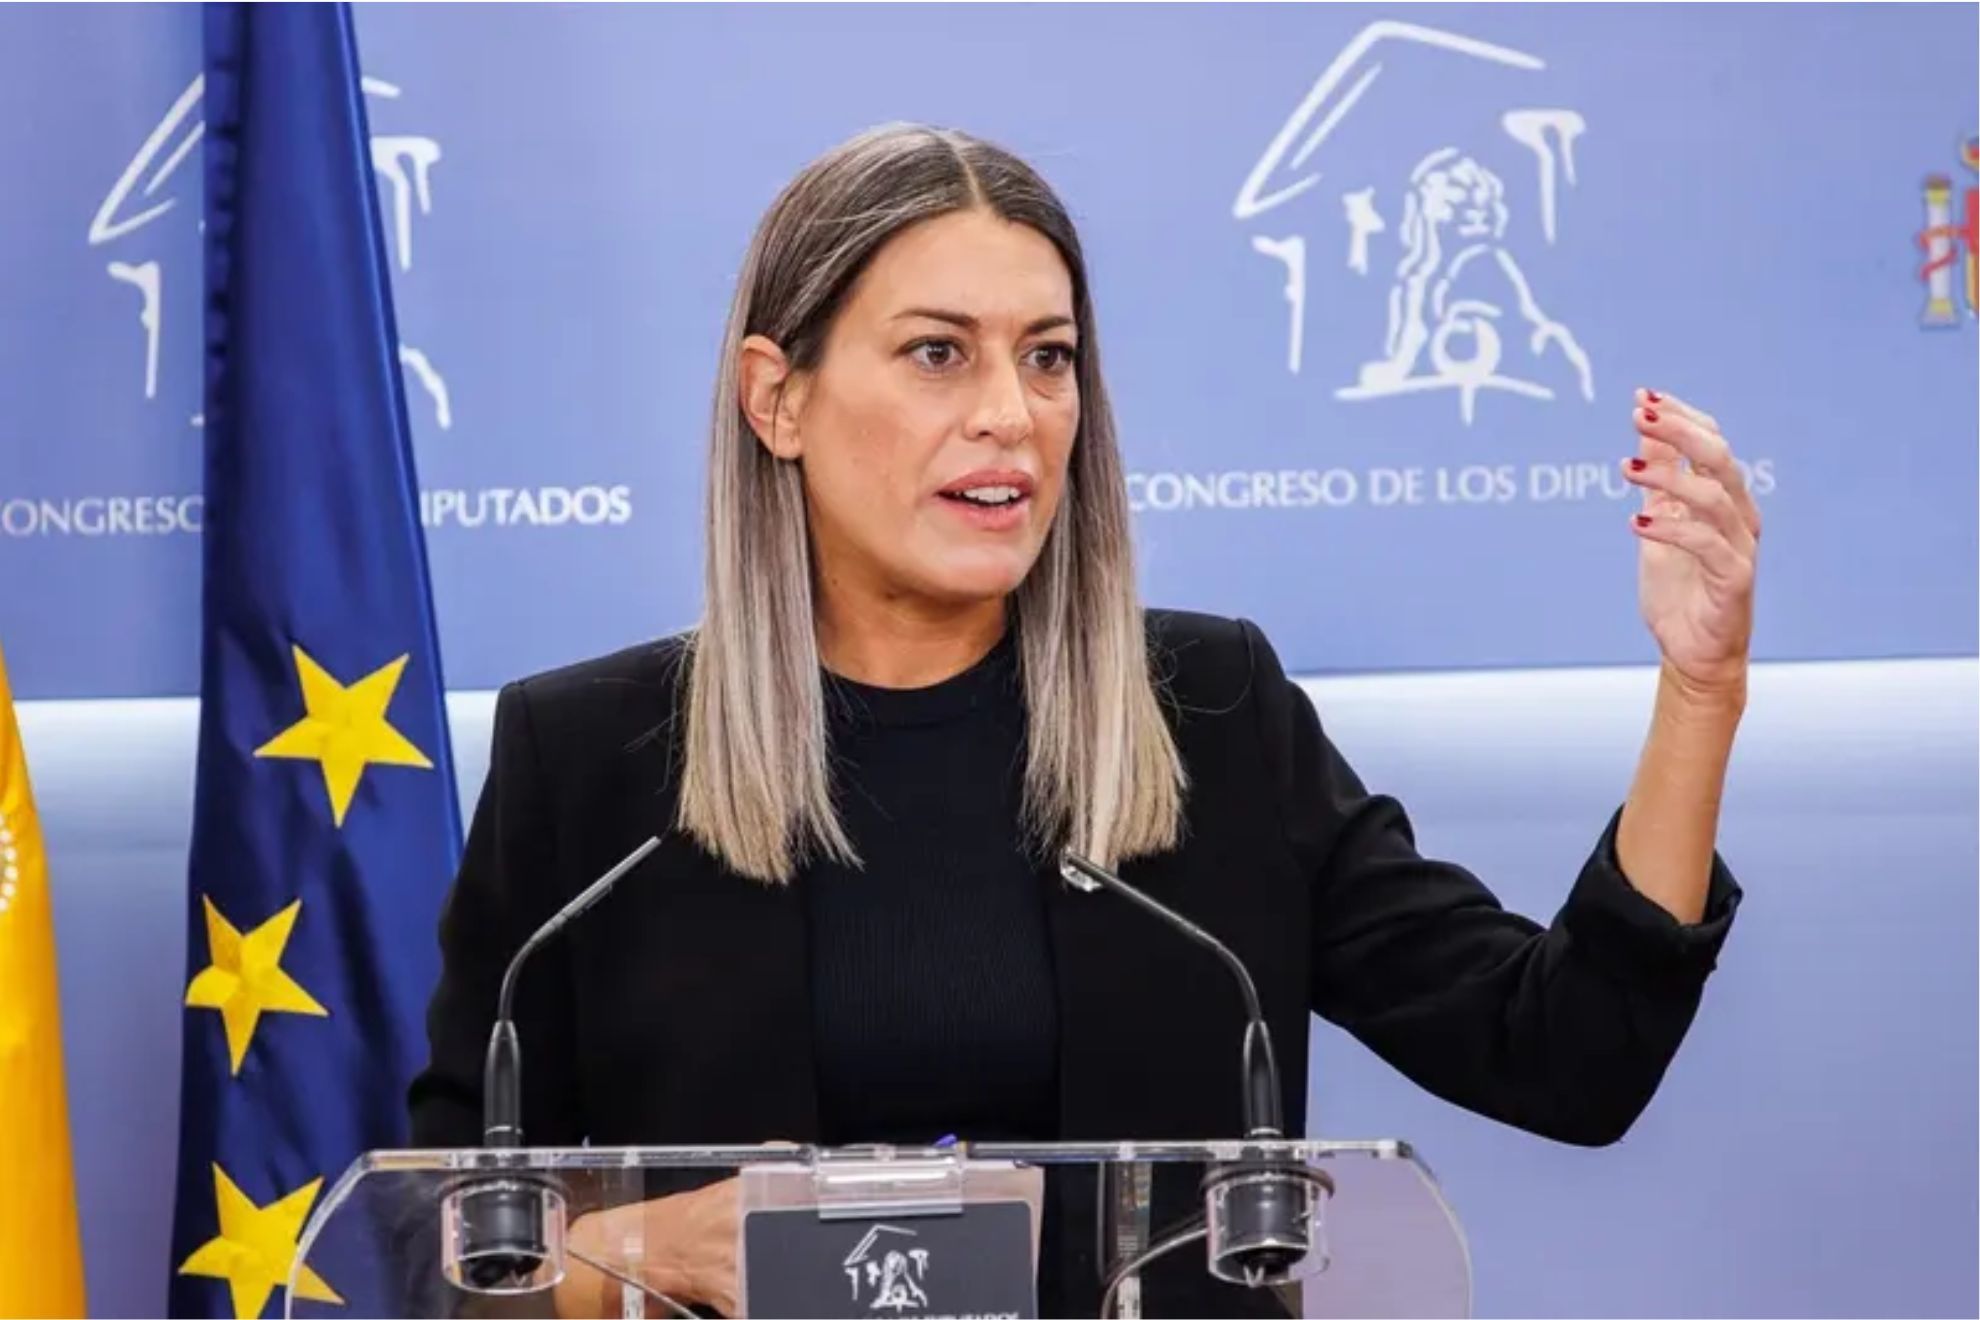 Miriam Nogueras, la diputada que apart la bandera de Espaa, cobra ms de 100 mil euros anuales del estado